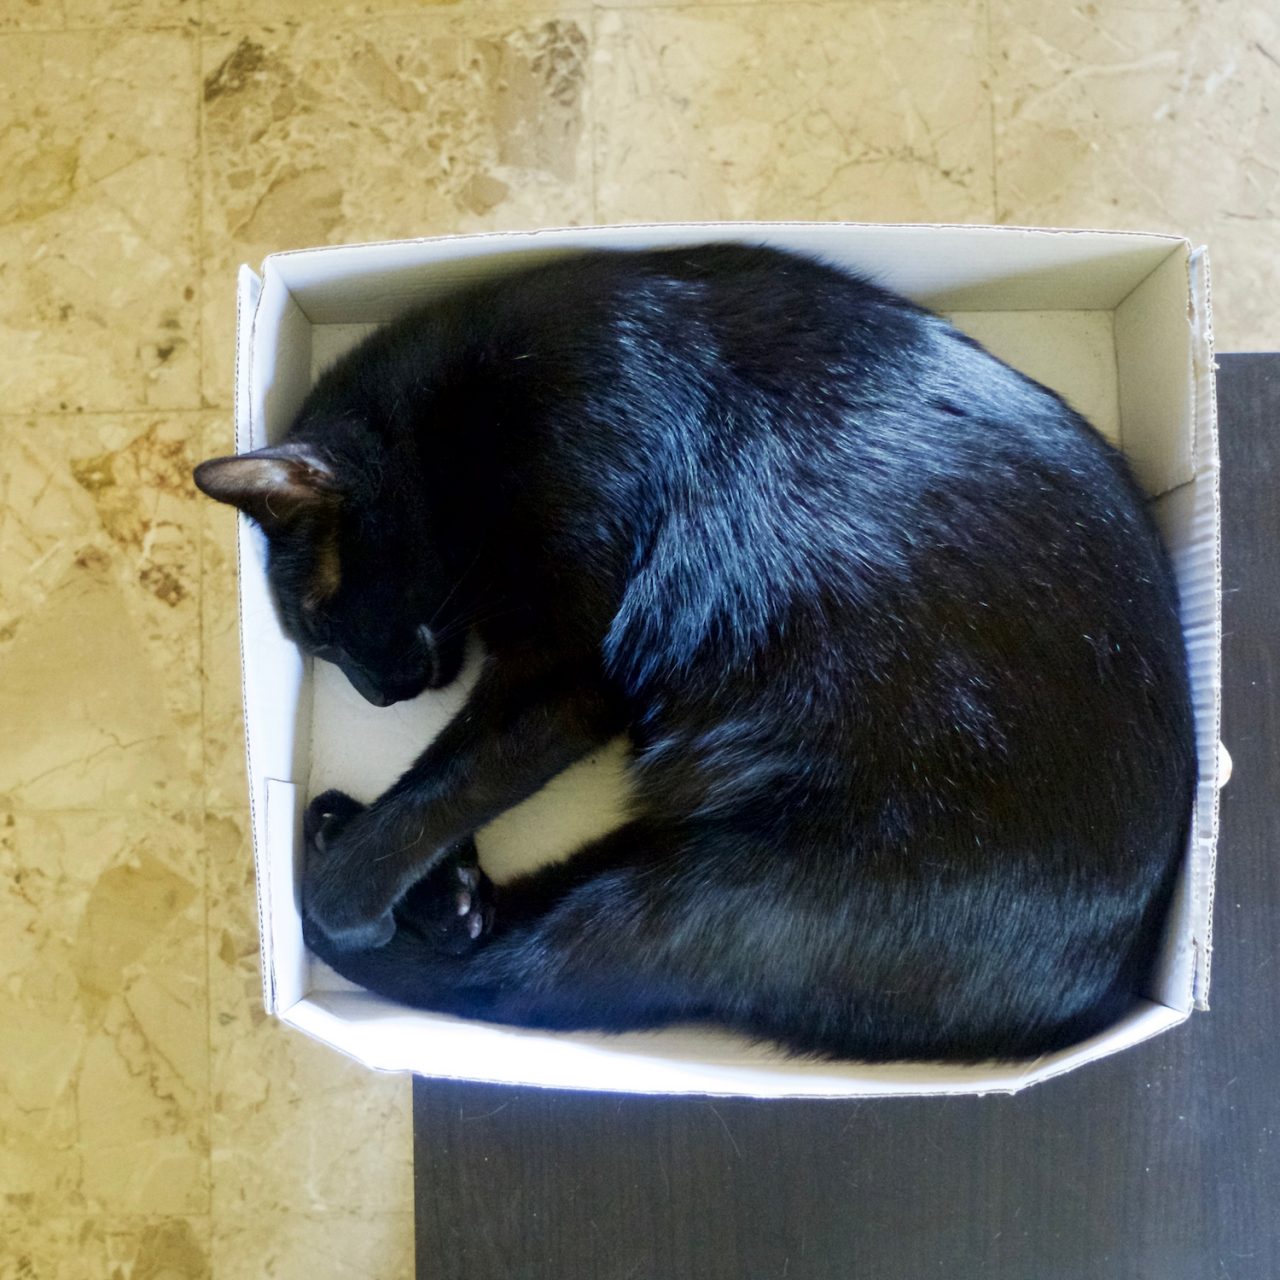 Le chat dort dans un carton !